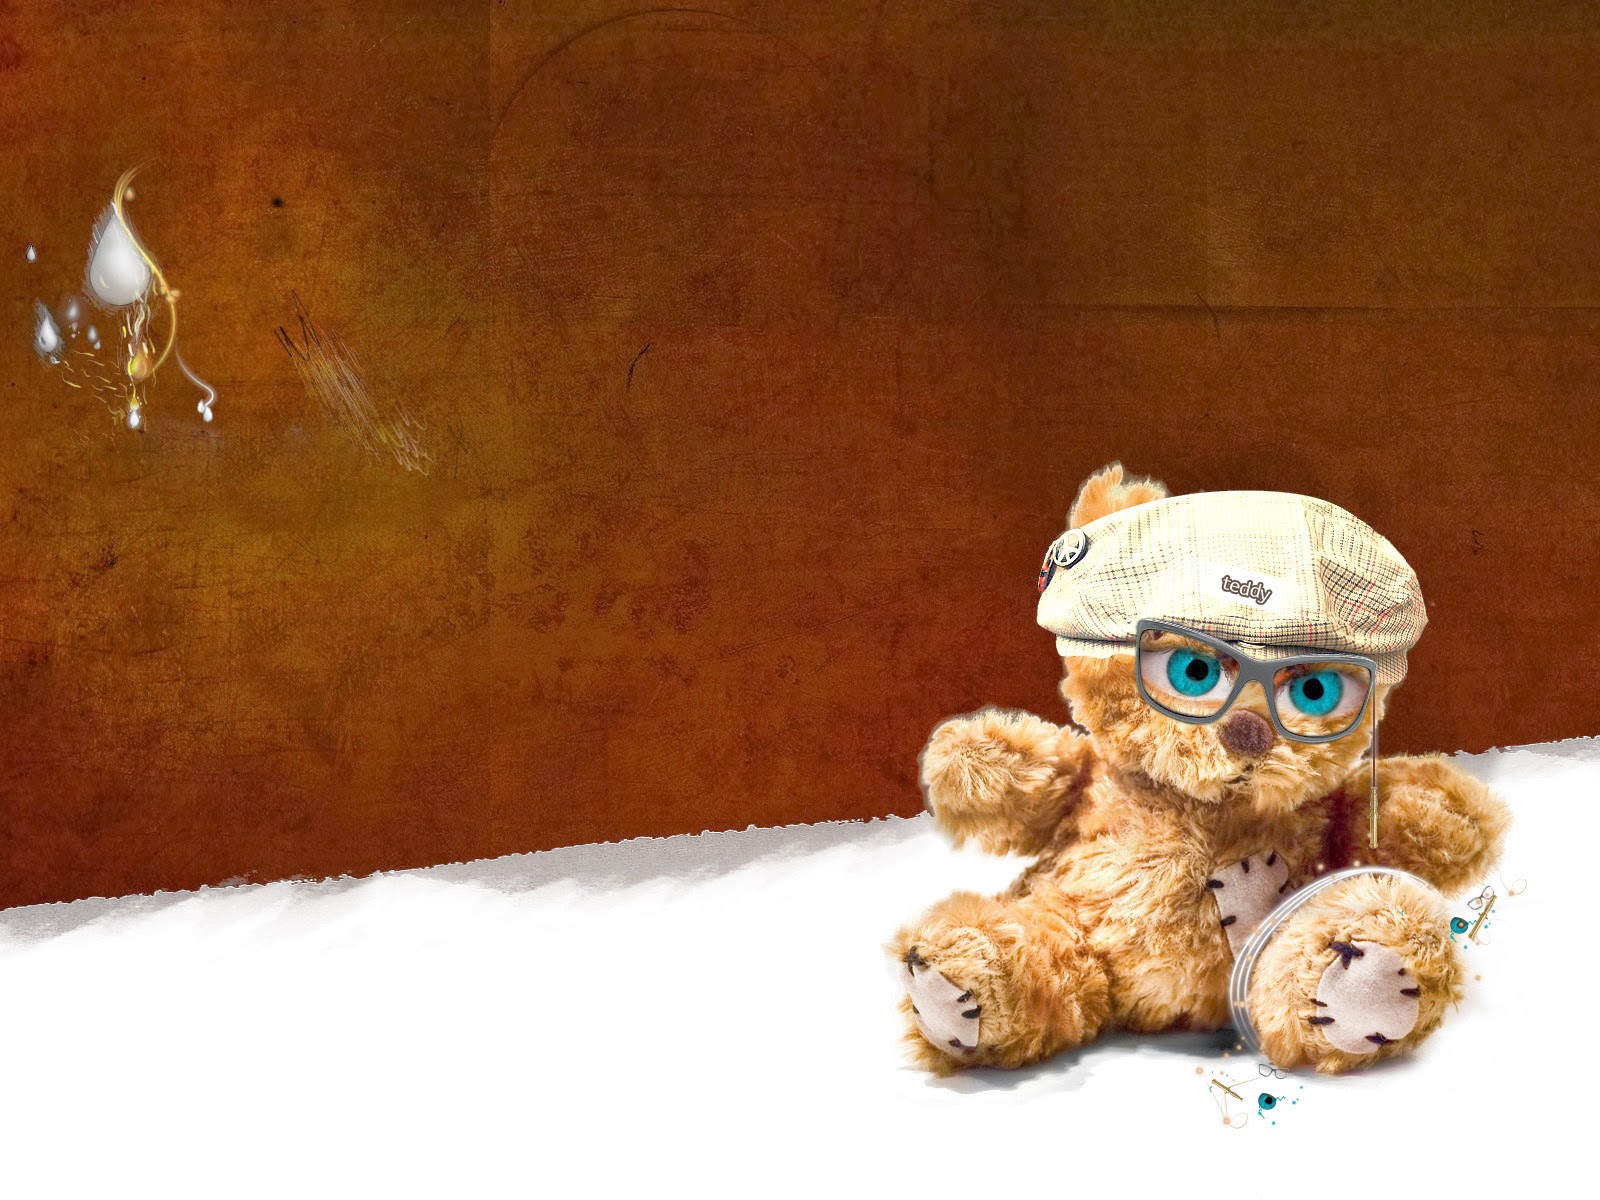 Cute Teddy Bear Wallpaper Hd - Teddy Bears Wallpapers Hd , HD Wallpaper & Backgrounds